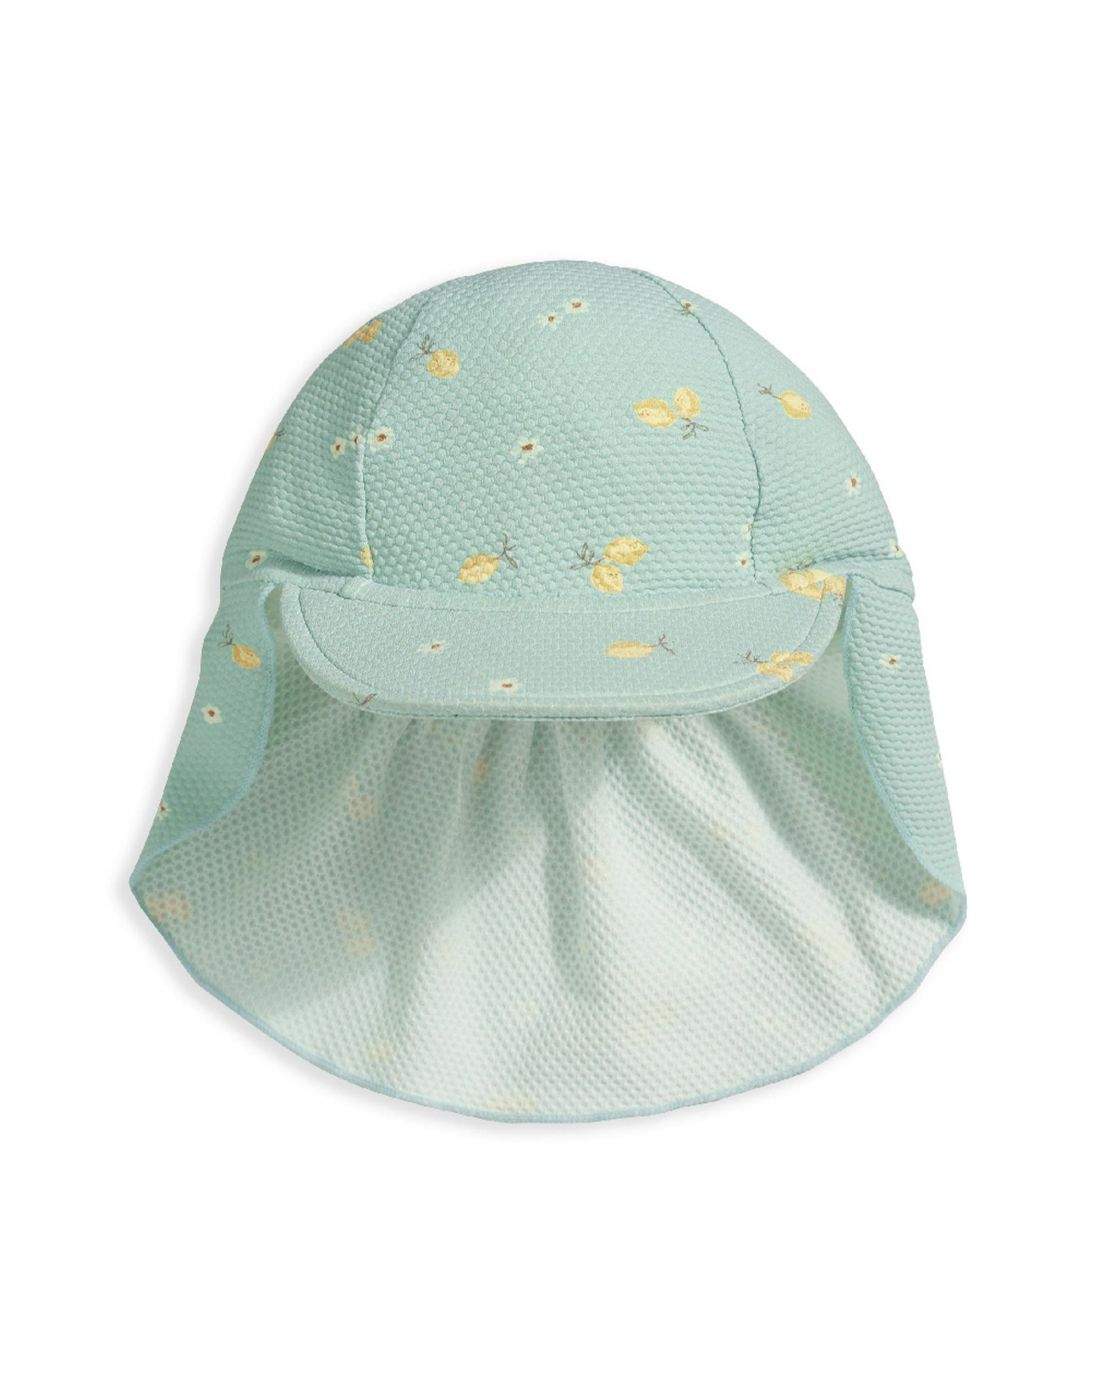 Βρεφικό Καπέλο ANTI-UV Mamas & Papas, Mamas& Papas, 24180054 |  LapinKids.com | LAPIN KIDS